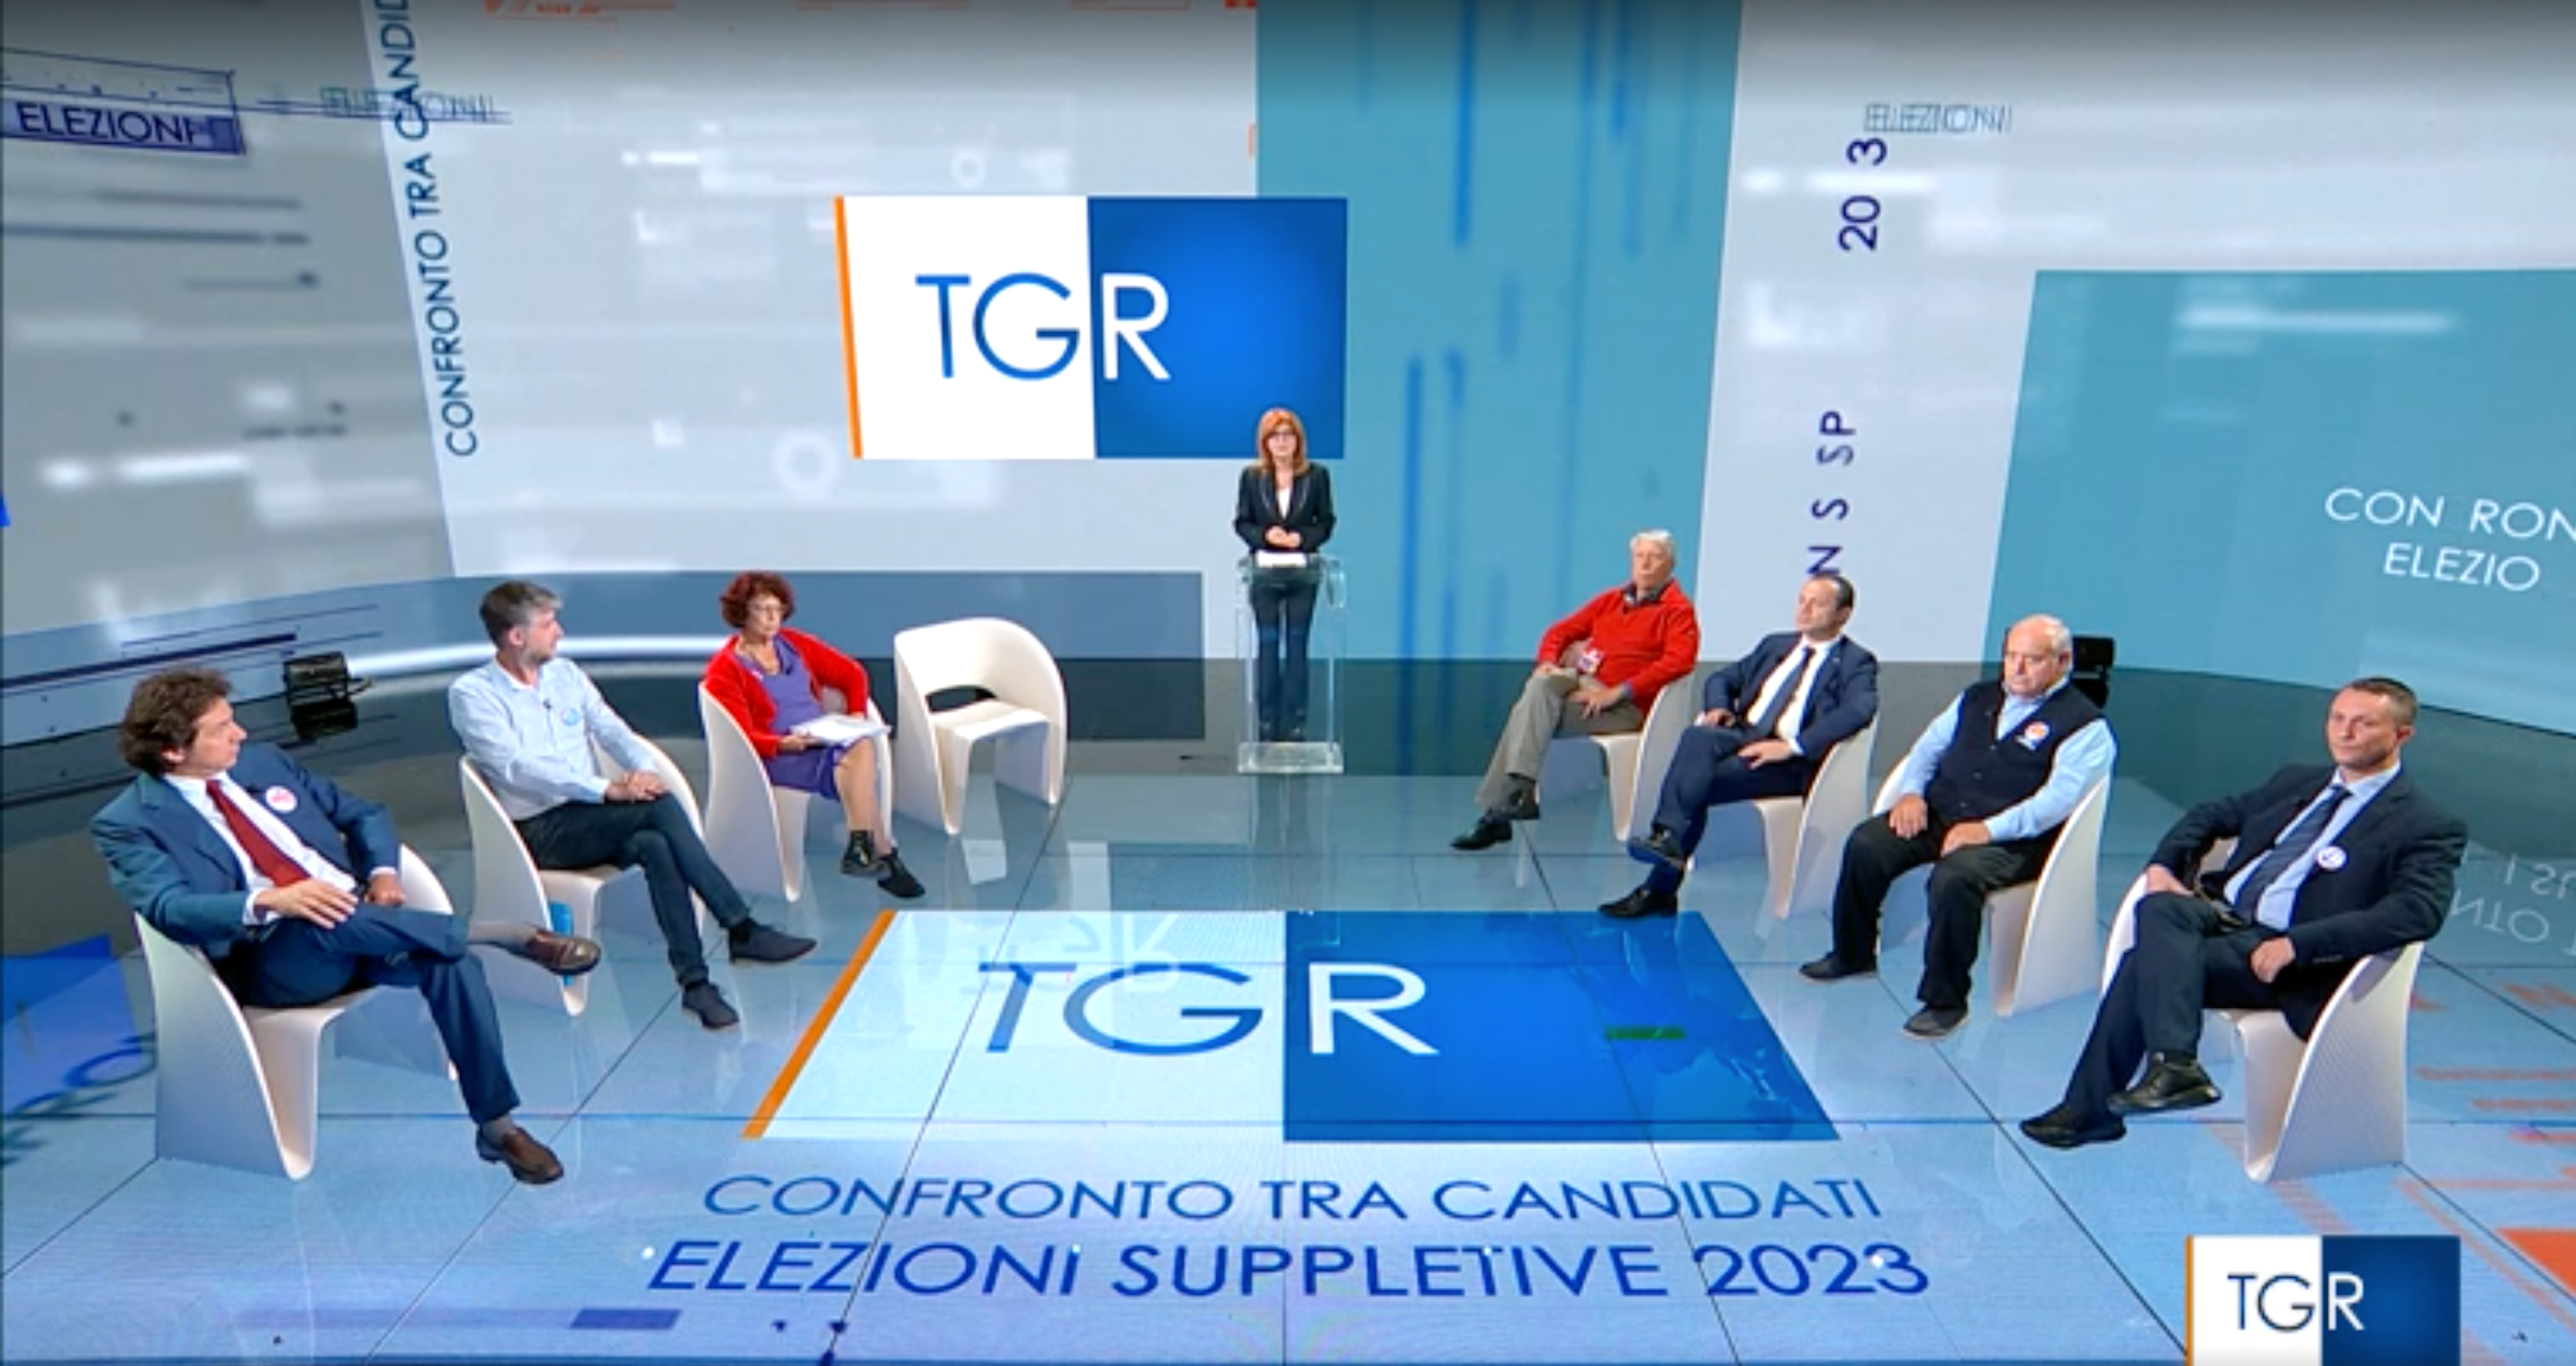 Senato Monza confronto candidati Tgr